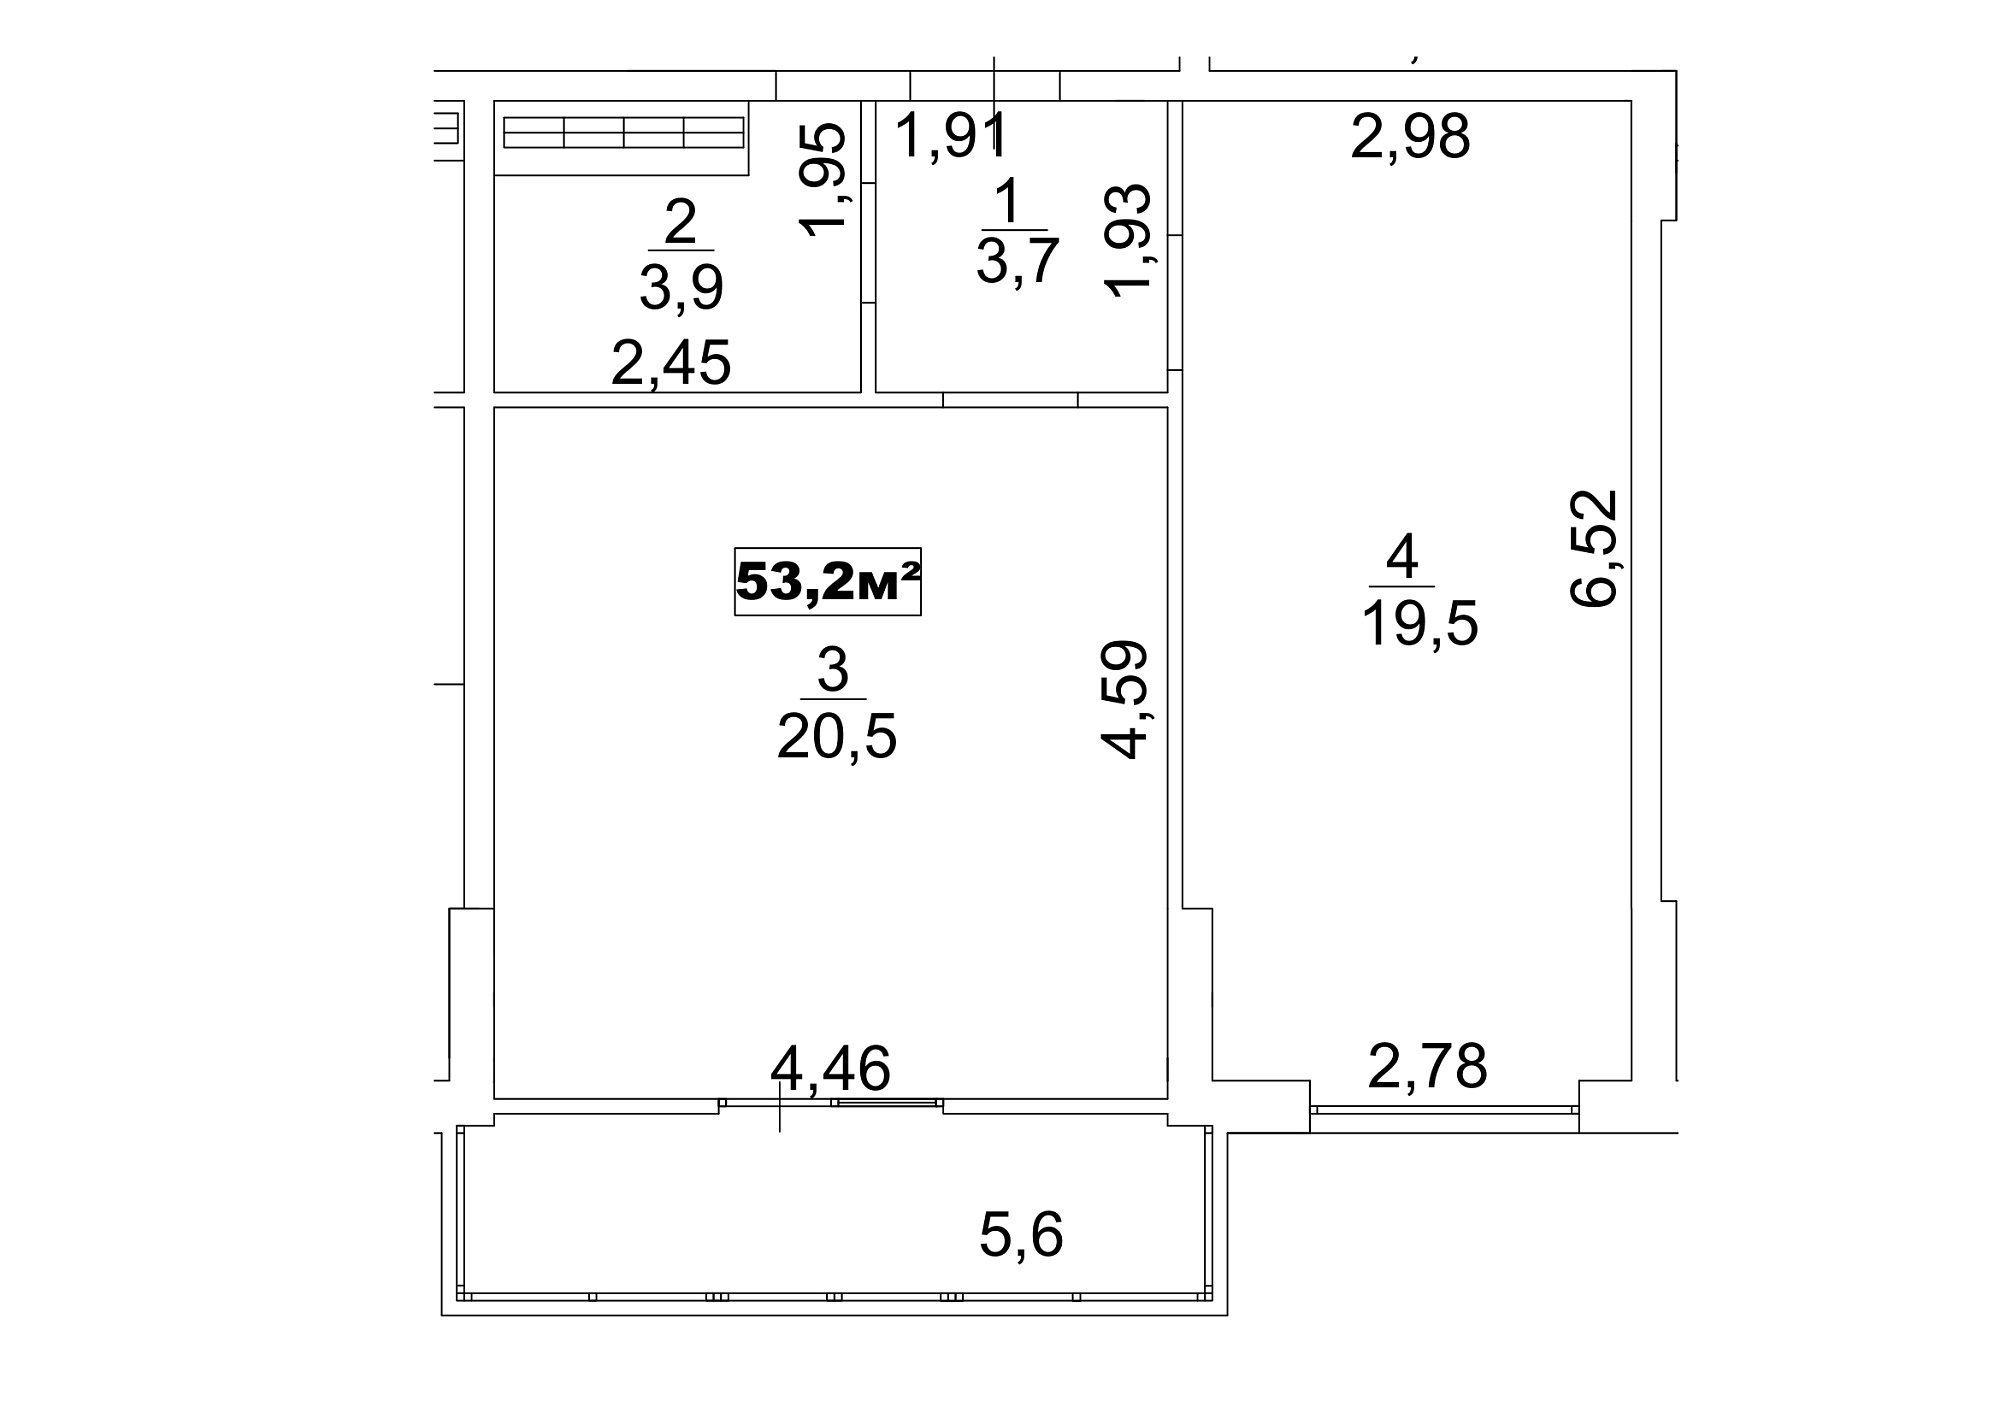 Планировка 1-к квартира площей 53.2м2, AB-13-05/00041.